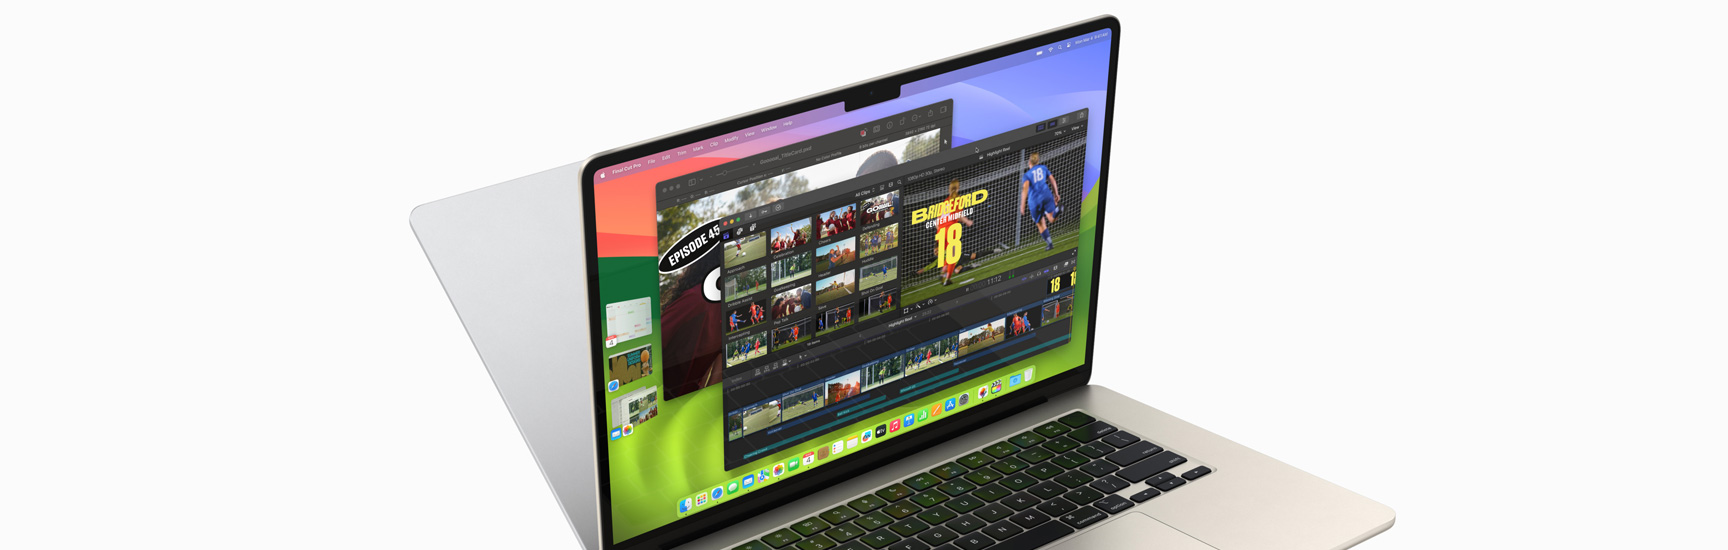 Egy kinyitott MacBook Airen a Final Cut Pro (FCP) és a Pixelmator Pro appok futnak, miközben a Naptár, a Safari, a Mail és a Fotók szintén meg vannak nyitva a kijelző bal oldalán. A gép mögött egy MacBook Pro hátulja látható, mintha a MacBook Air tükörképe lenne.